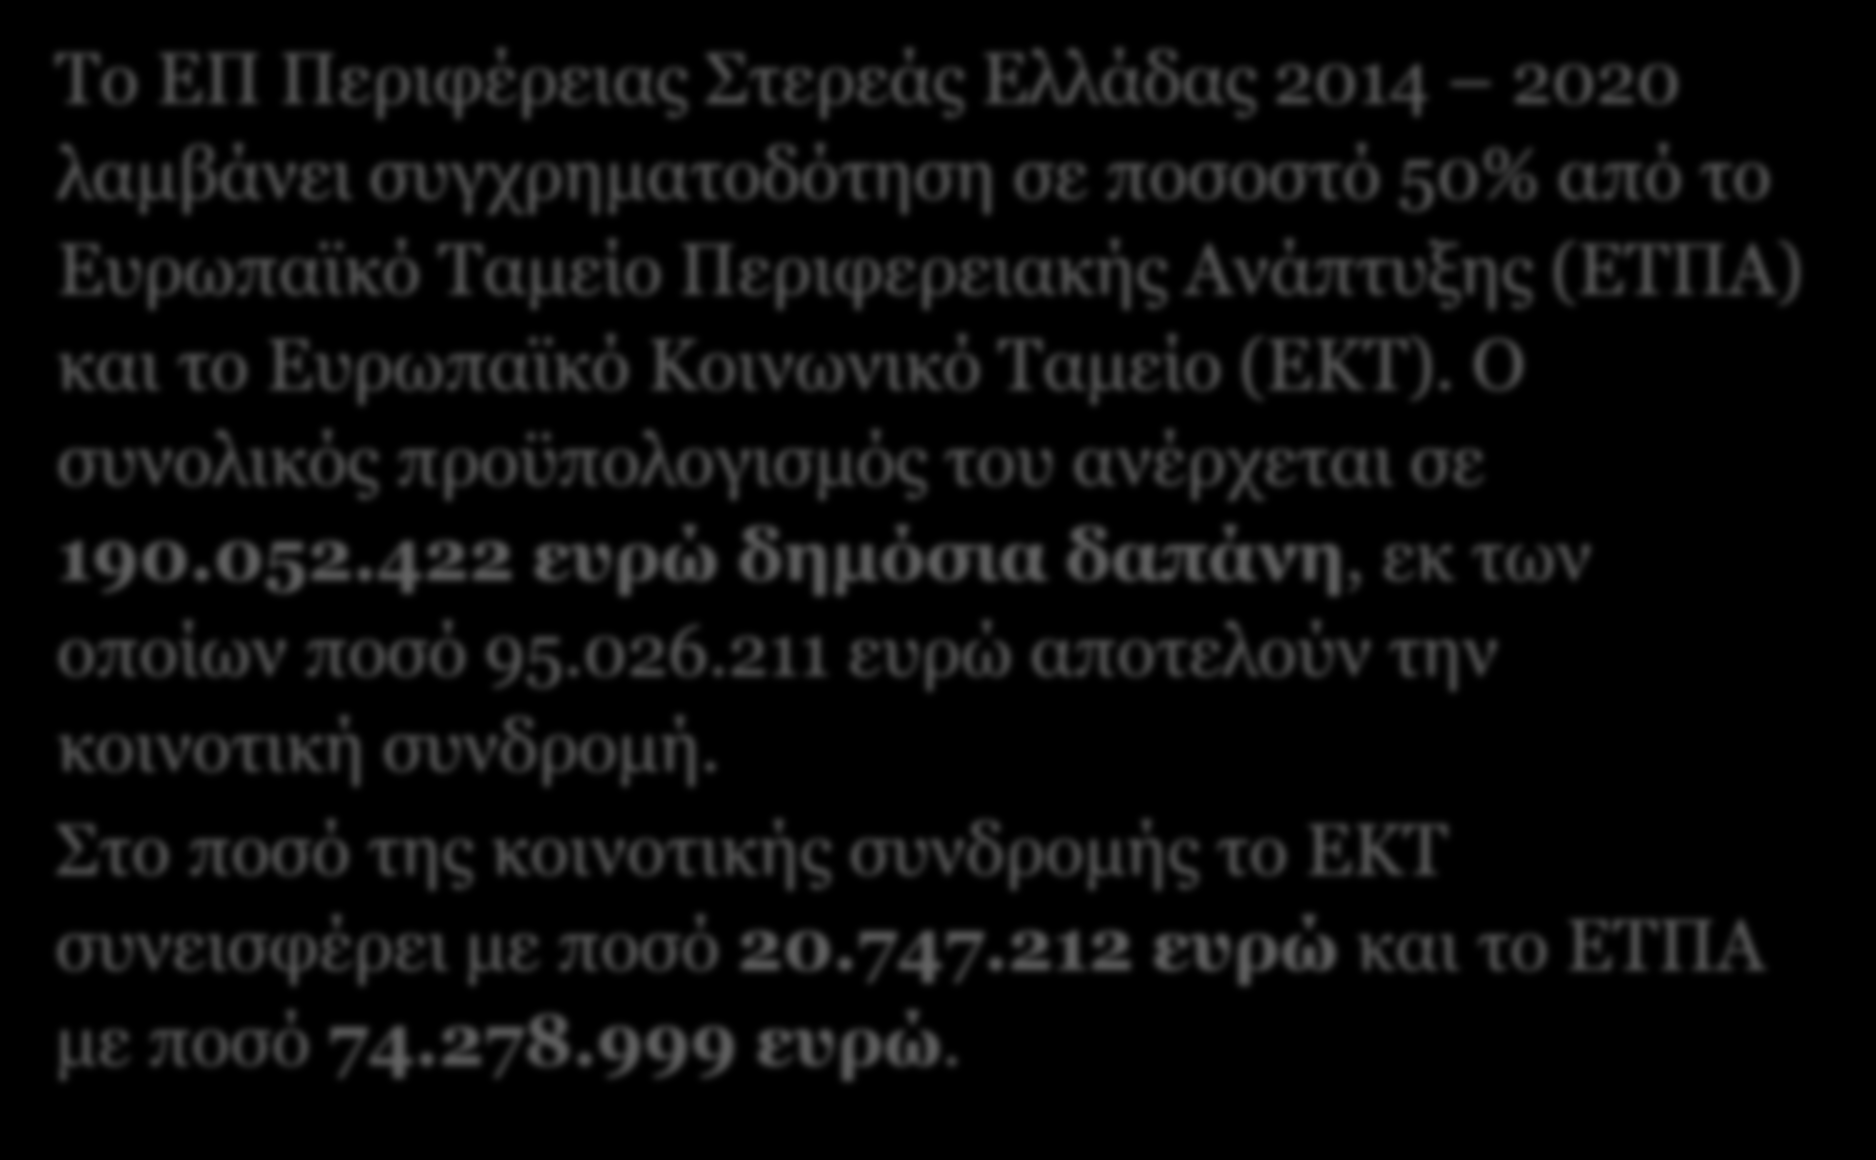 Οι Πόροι του ΕΠ Το ΕΠ Περιφέρειας Στερεάς Ελλάδας 2014 2020 λαμβάνει συγχρηματοδότηση σε ποσοστό 50% από το Ευρωπαϊκό Ταμείο Περιφερειακής Ανάπτυξης (ΕΤΠΑ) και το Ευρωπαϊκό Κοινωνικό Ταμείο (ΕΚΤ).